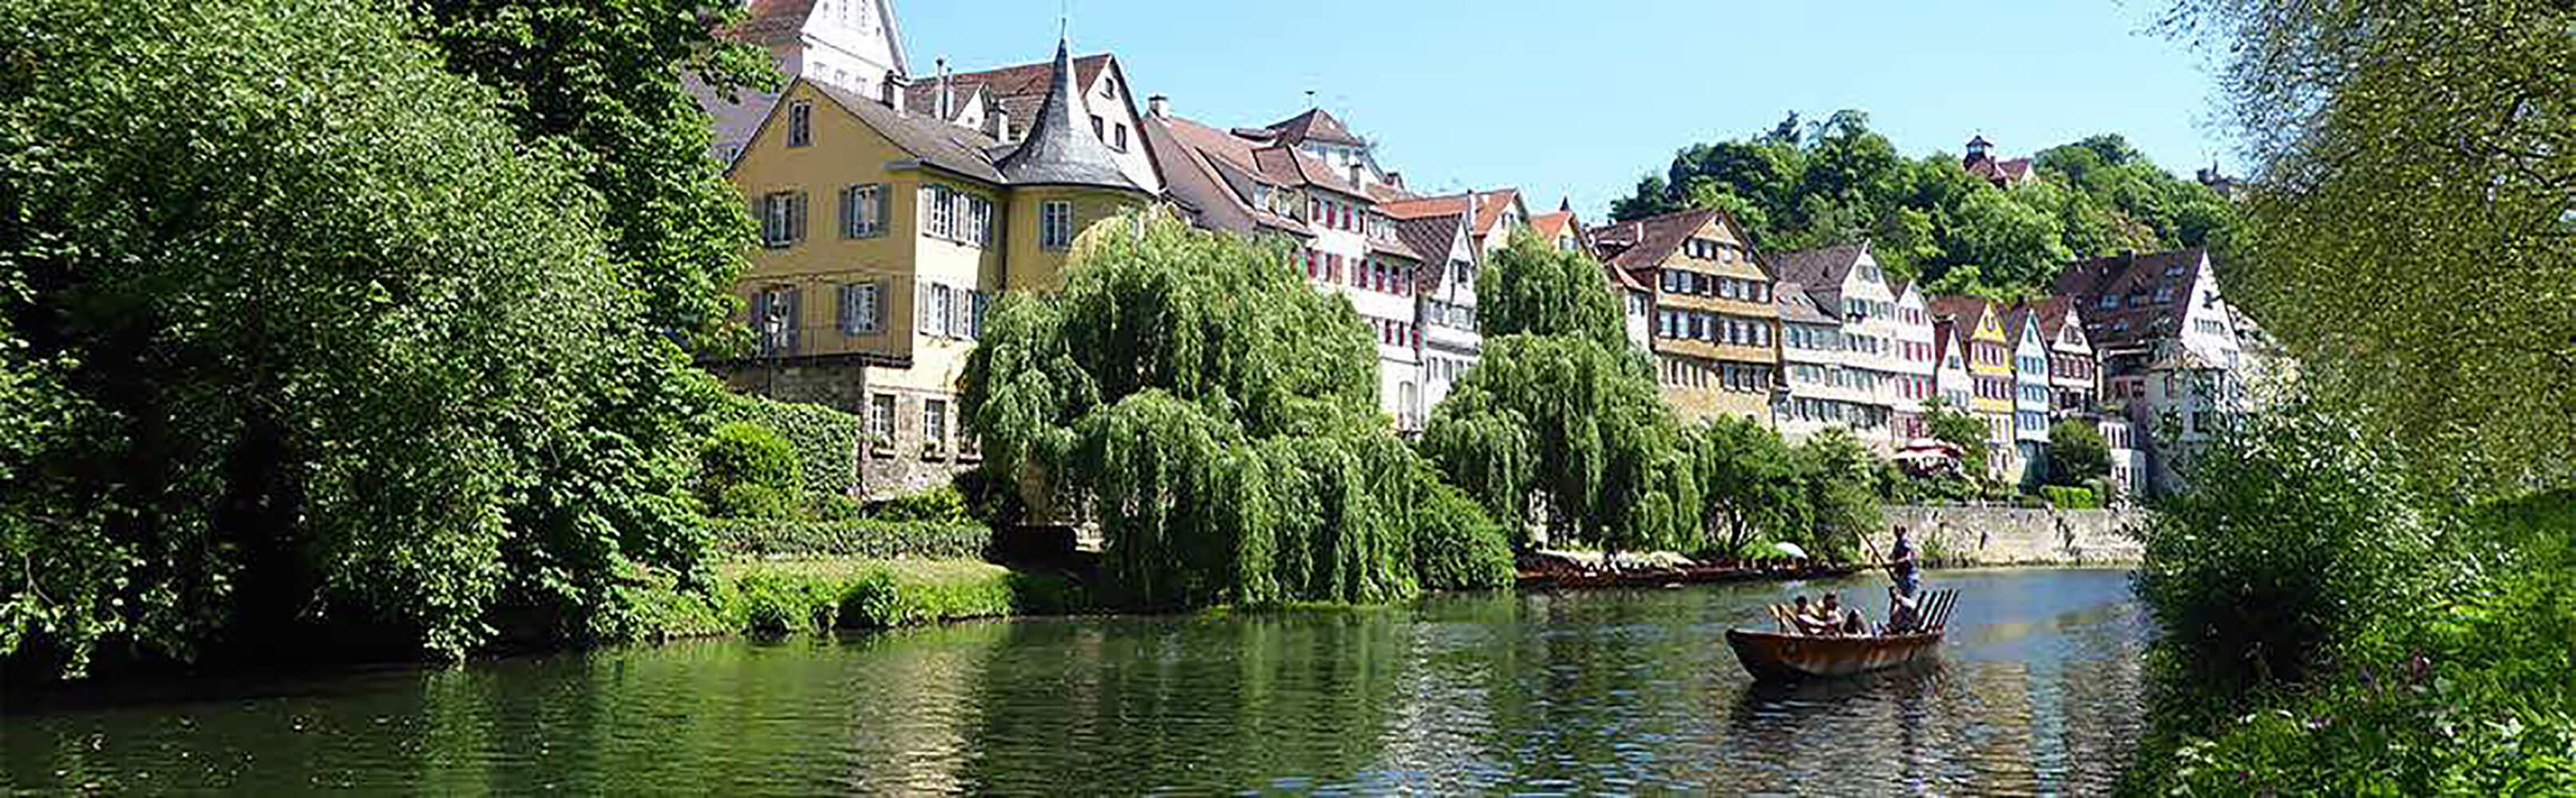 Tübingen - einfach märchenhaft 1